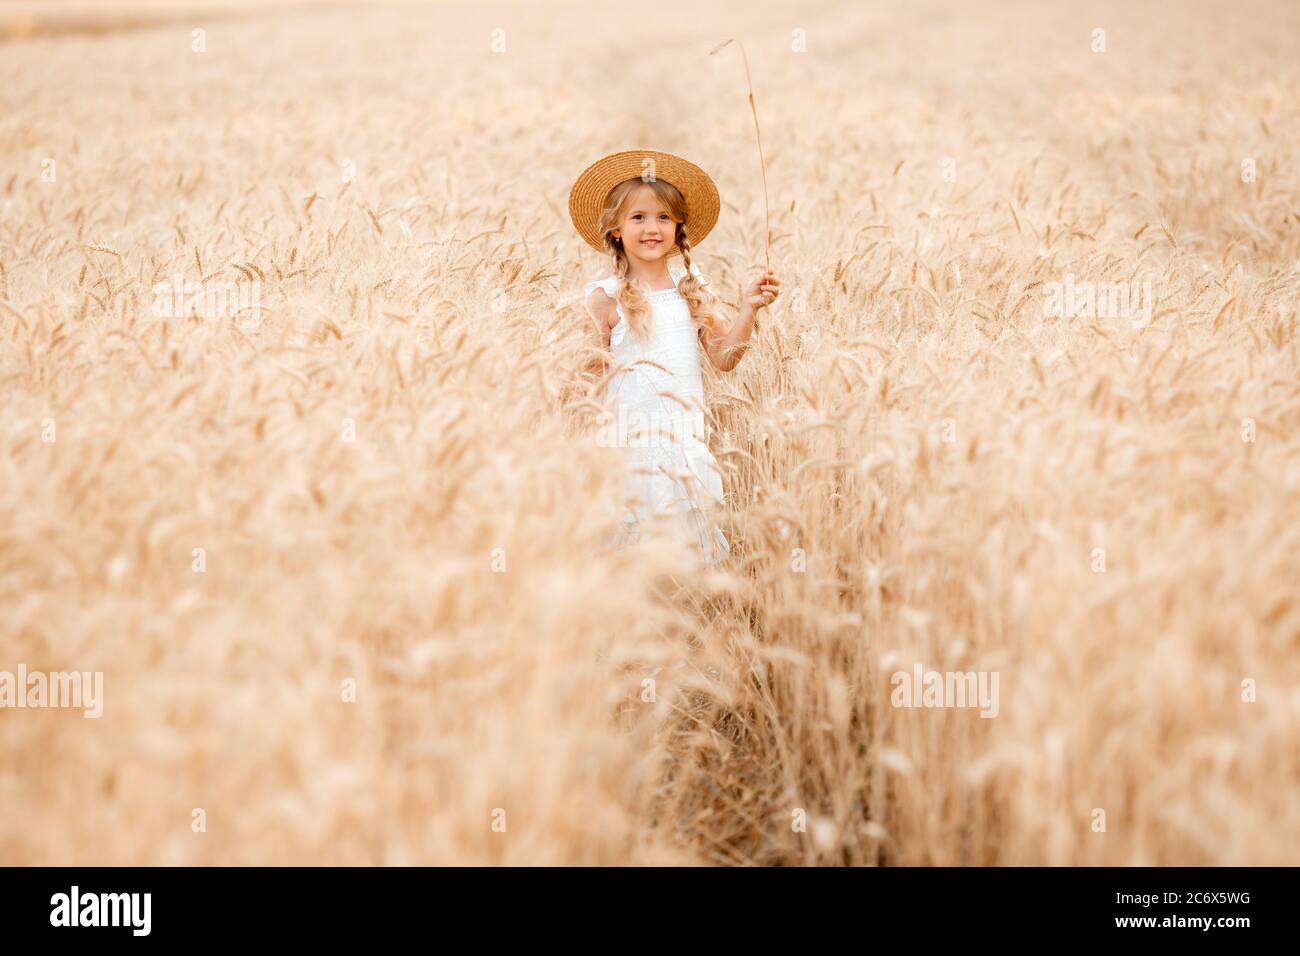 Adorabile bambina gioca su un campo di grano in una calda giornata estiva Foto Stock